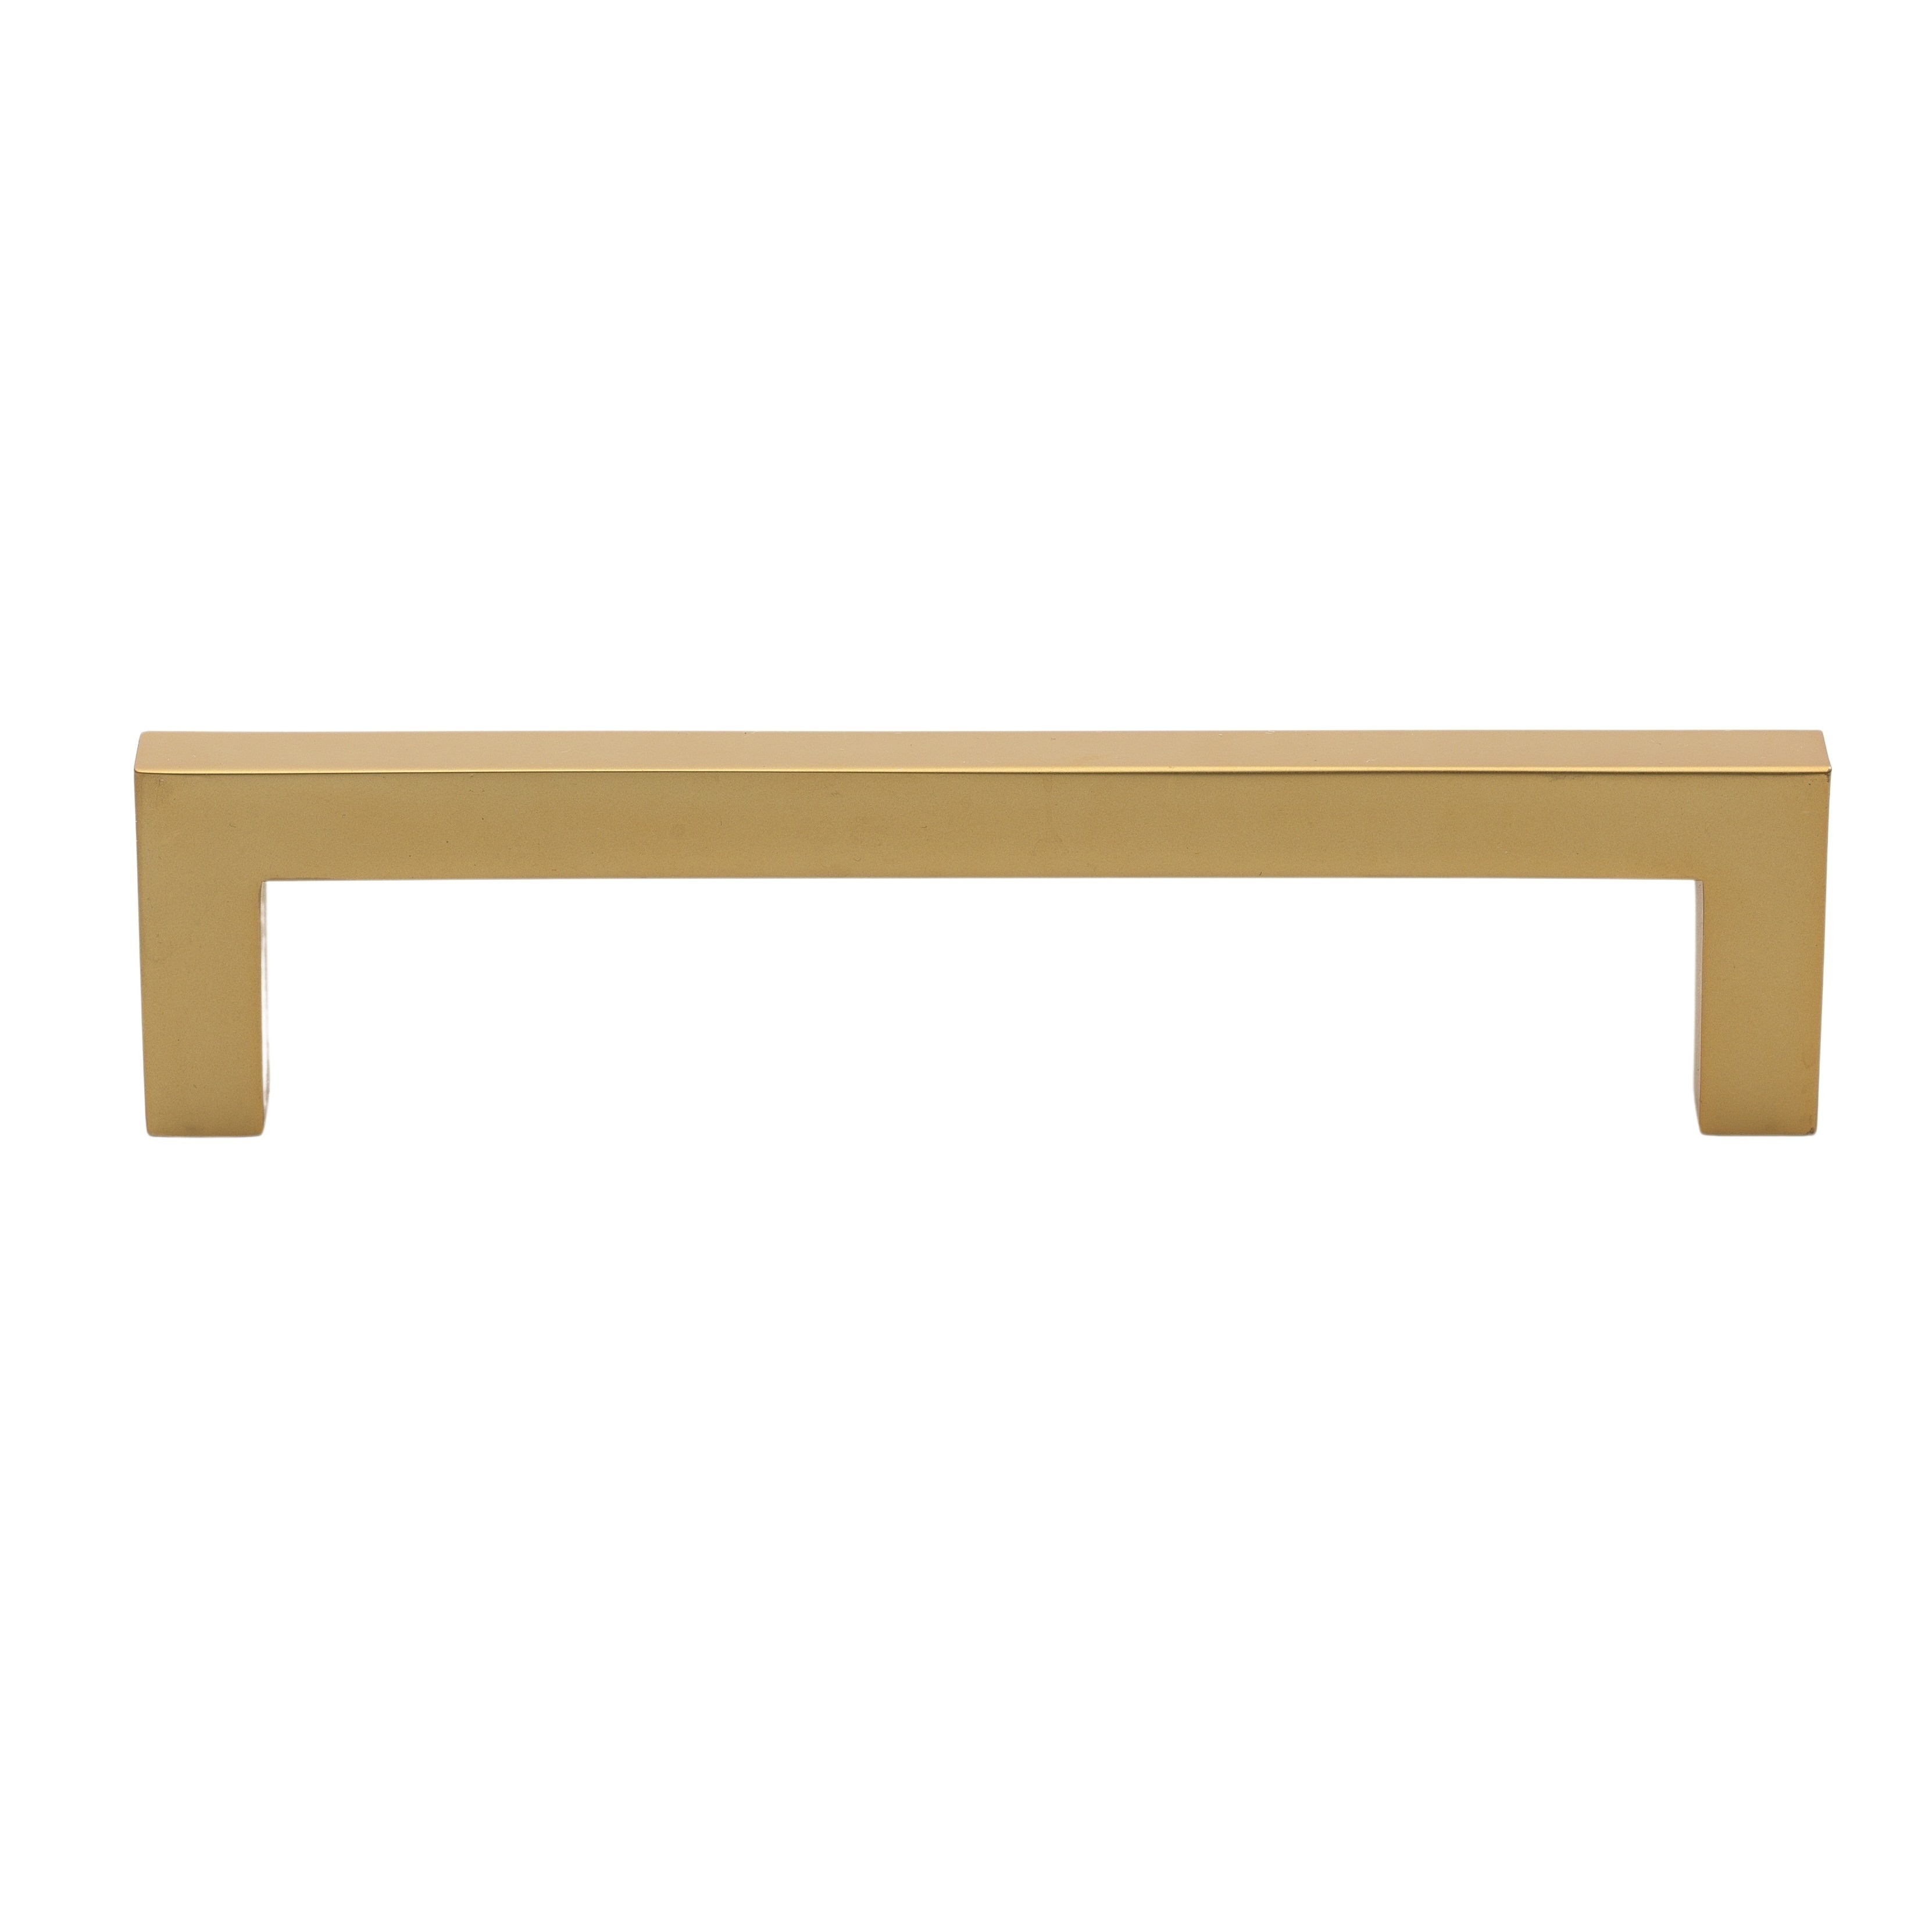 Furniture-Wooden Handles Beech Metal Base Gold BA 160mm 